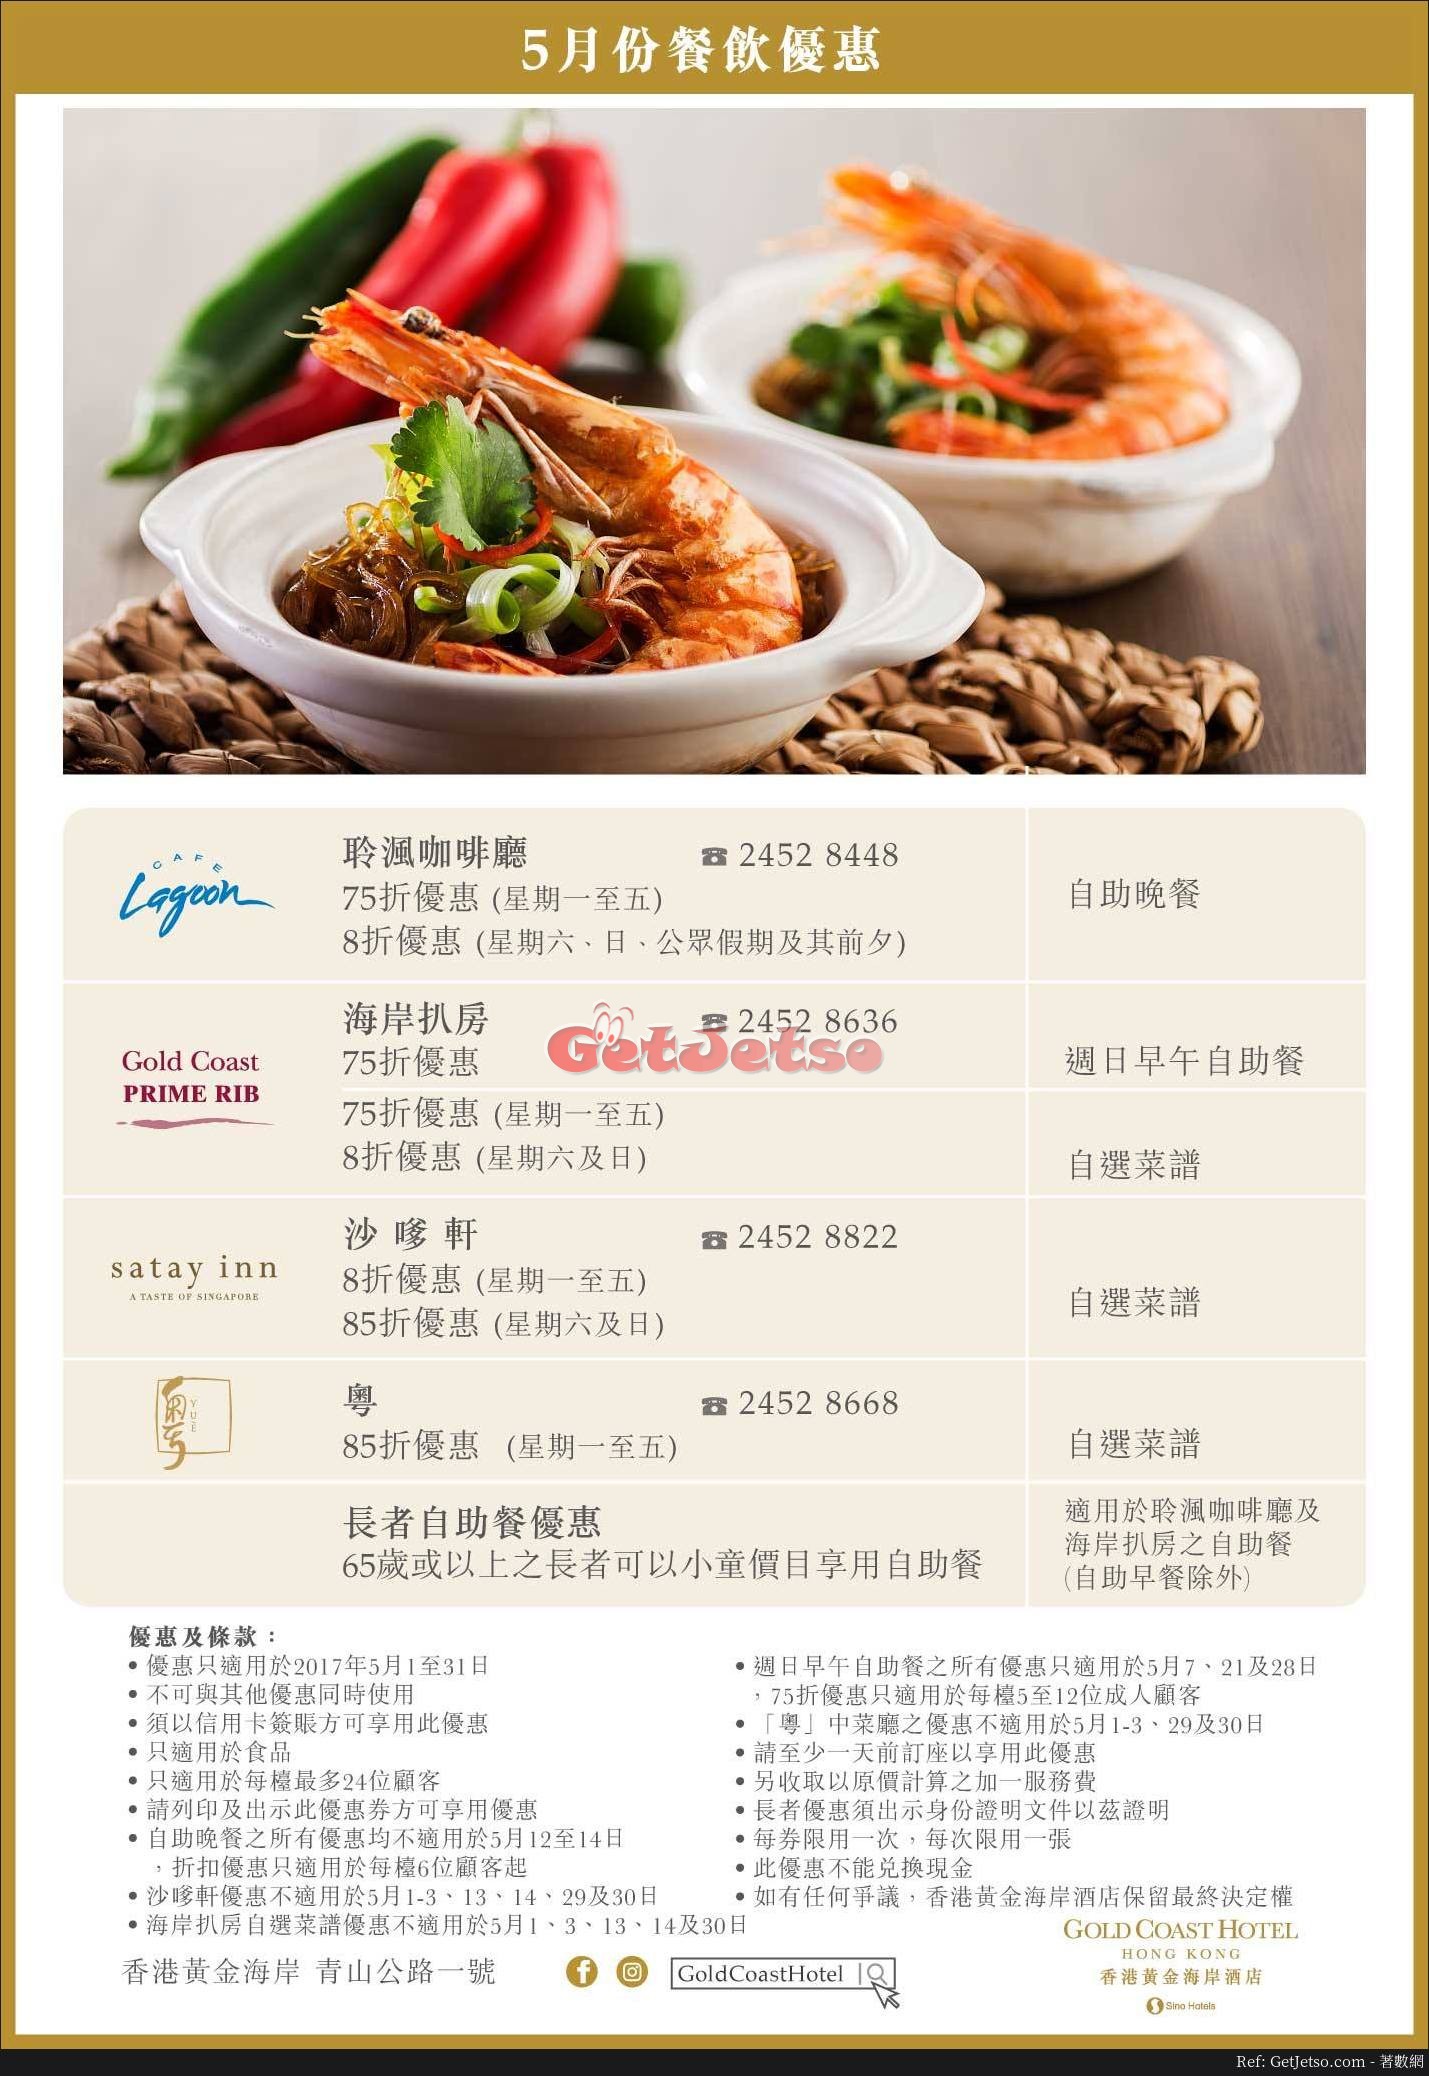 香港黃金海岸酒店5月份自助餐/餐飲低至75折優惠(至17年5月31日)圖片1